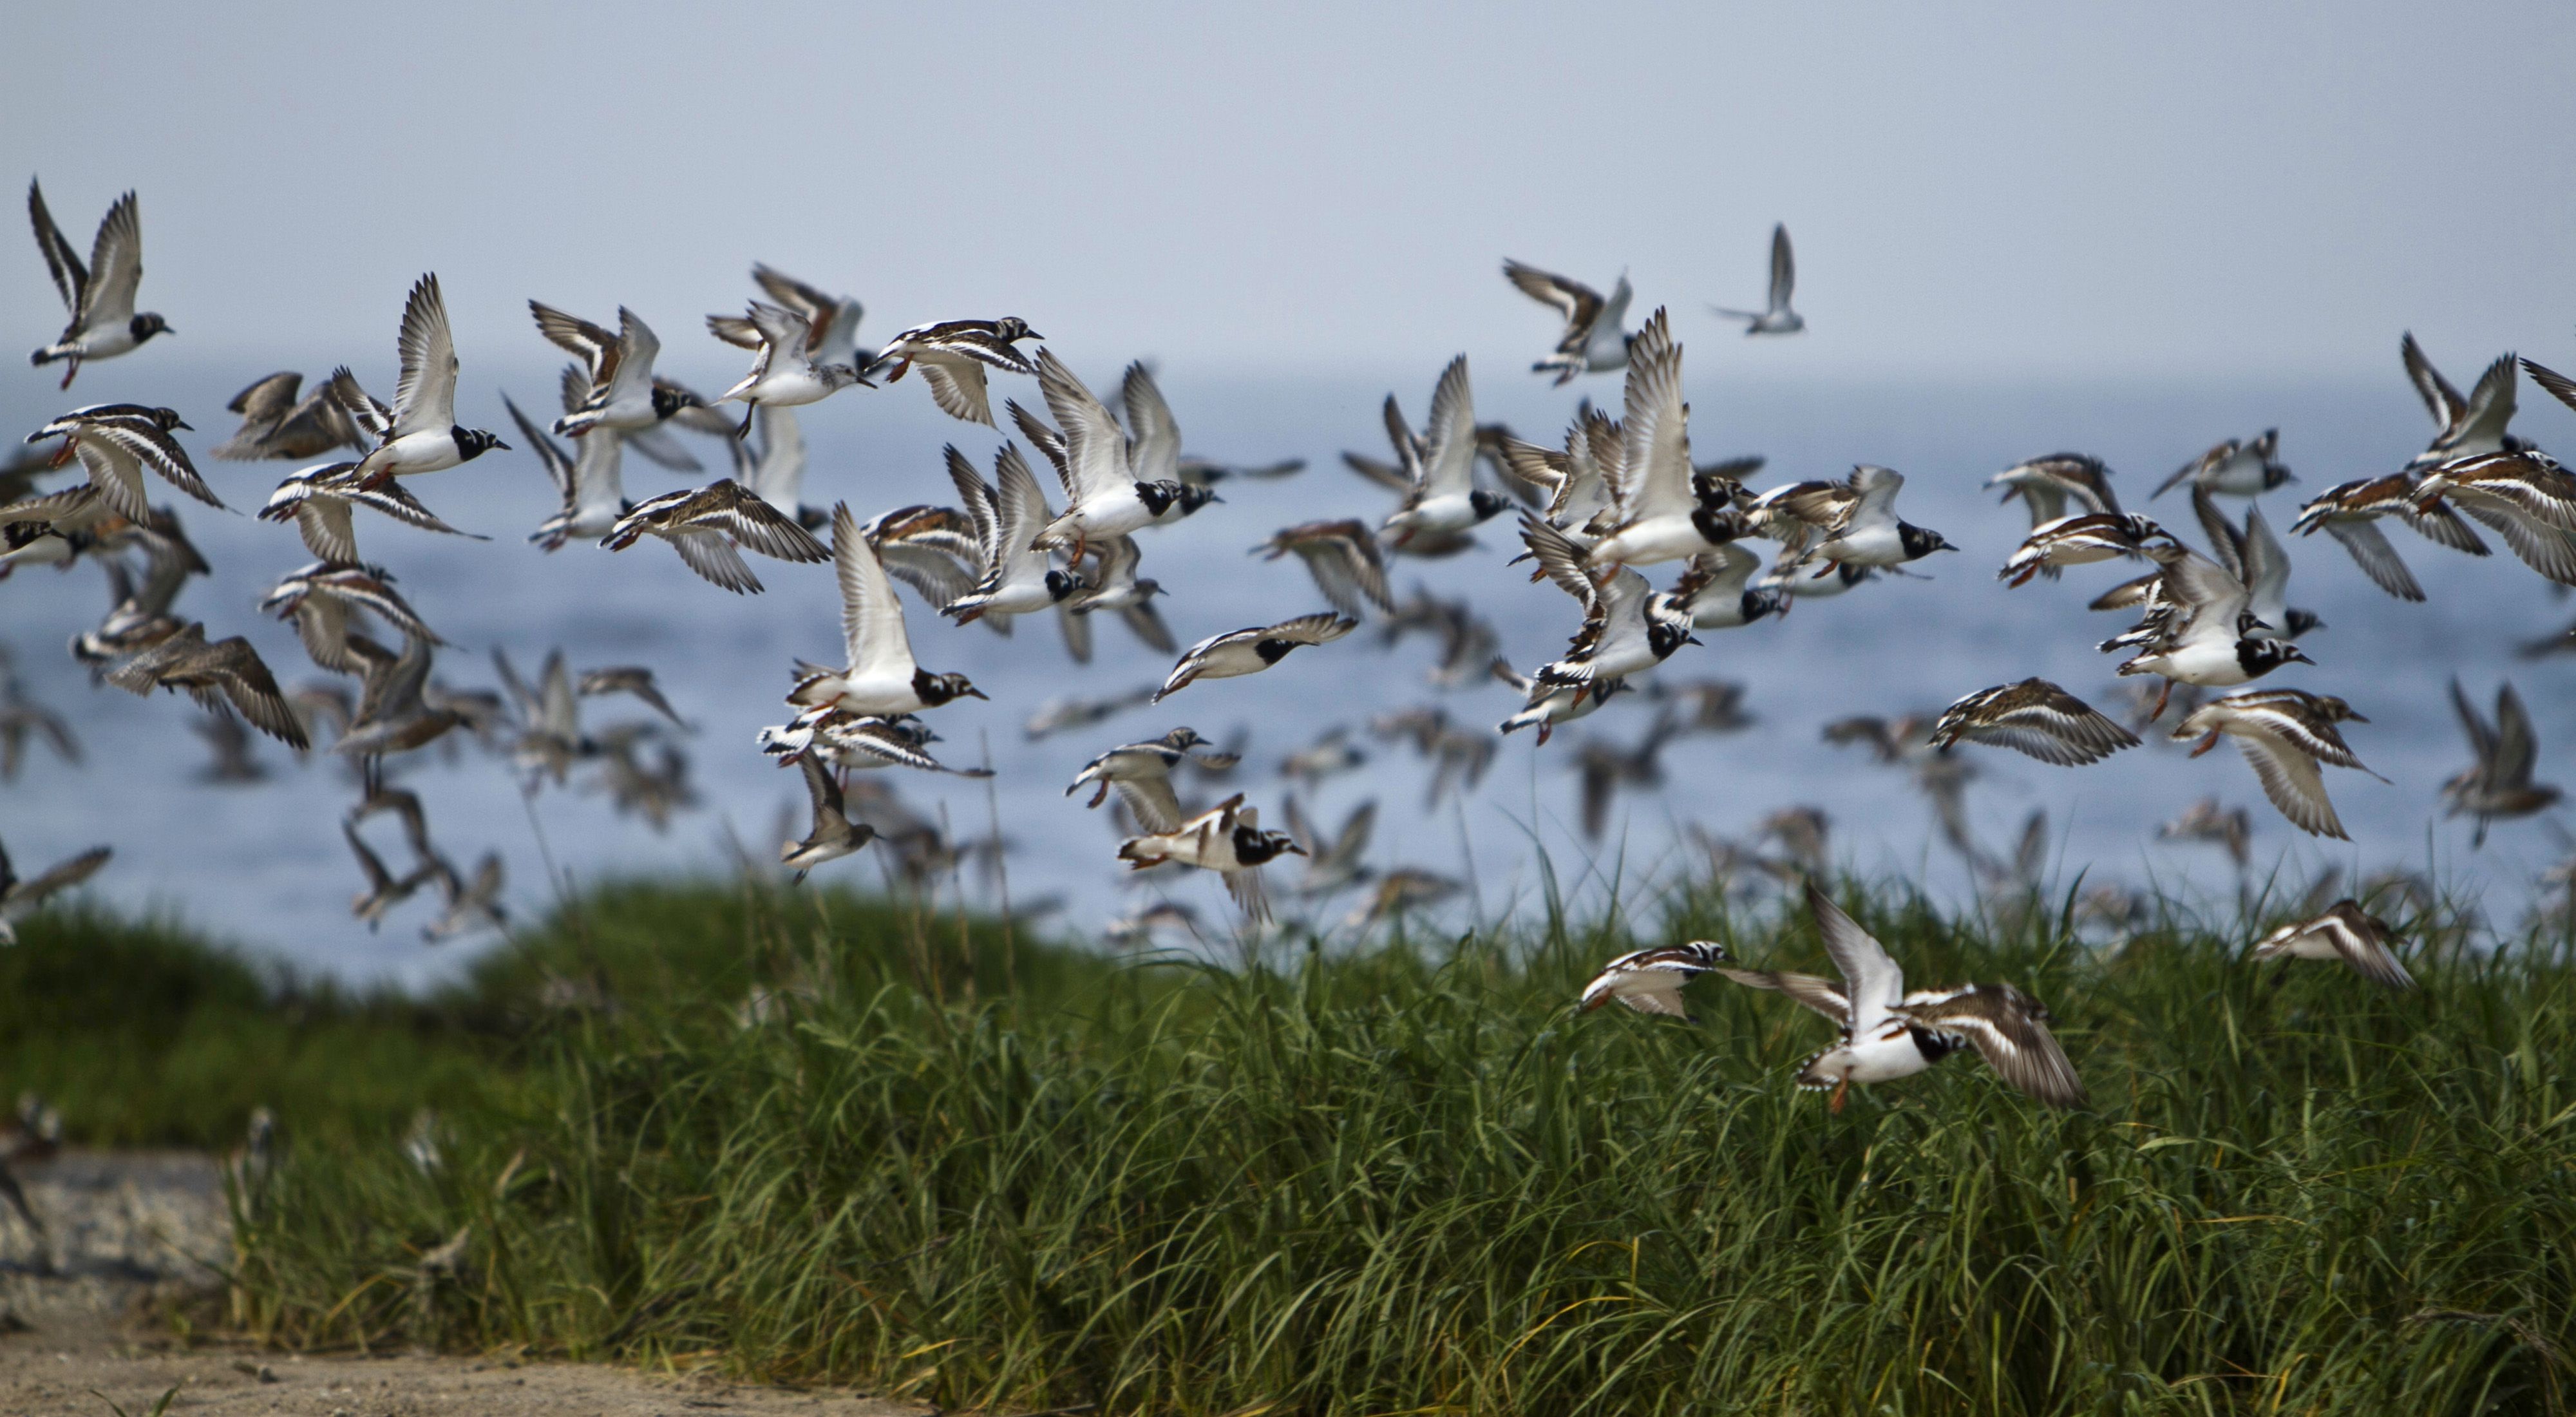 A flock of migrating birds mid-flight